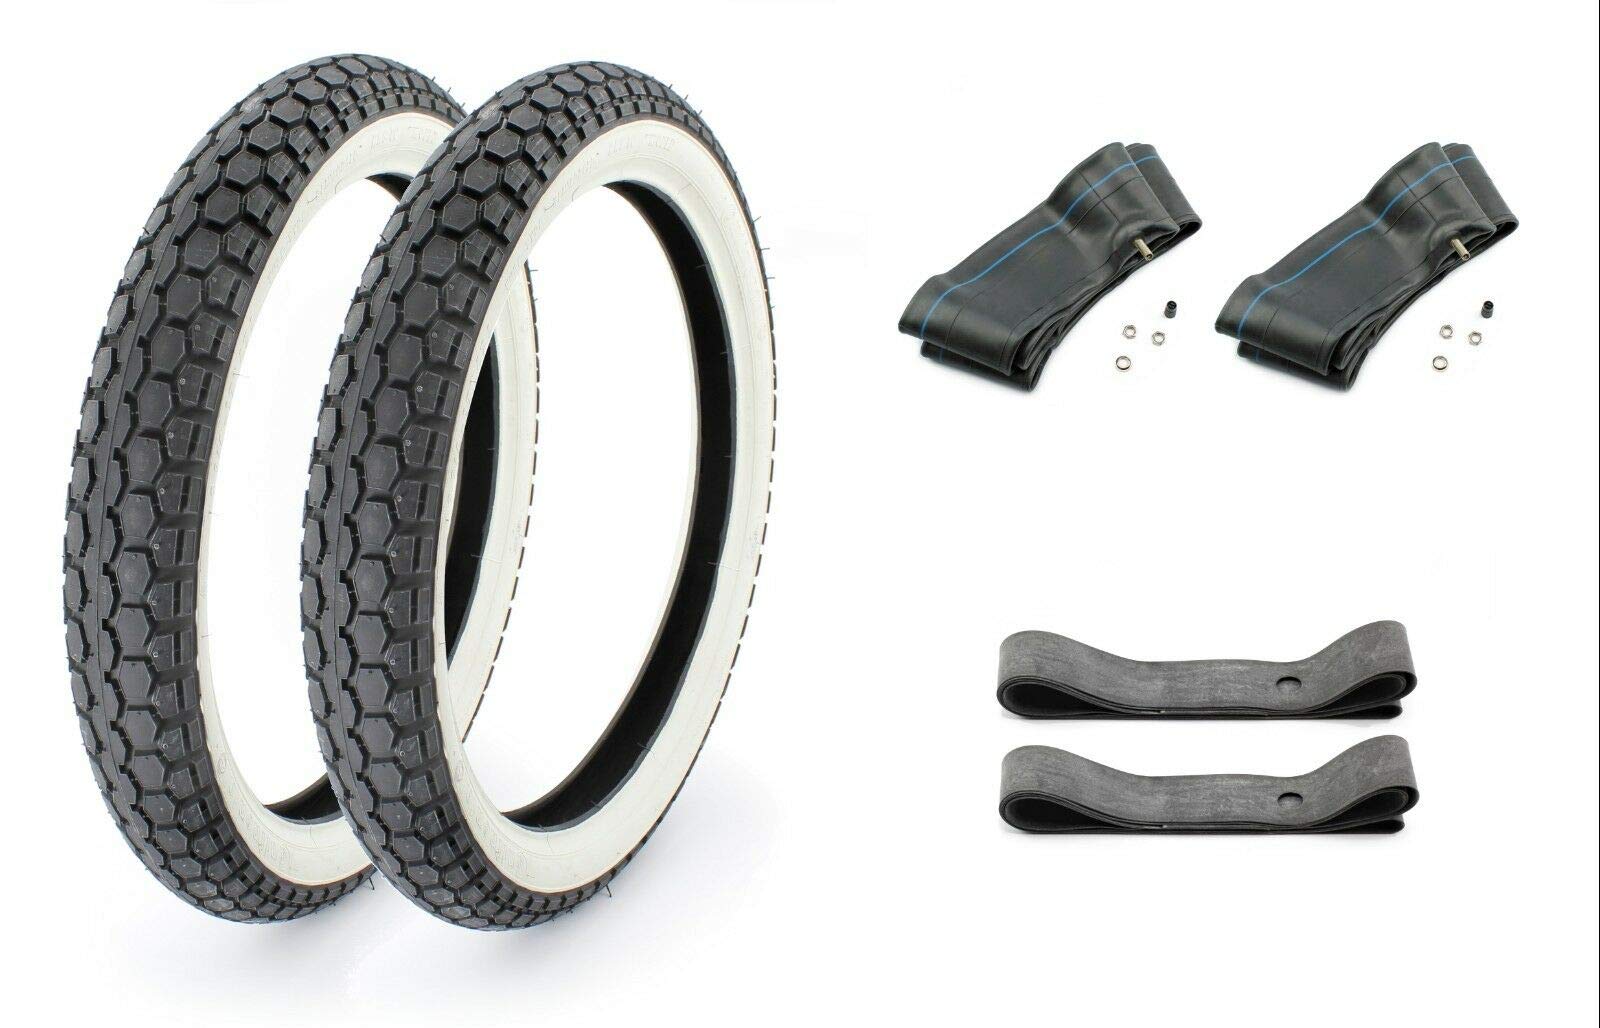 Reifen-Set: 2x Continental KKS10 Weißwand Reifen 2,75 x 17 Zoll, 47J inklusive Schläuche und Felgenbänder für Moped, Mofa, Motorrad 50ccm von BISOMO